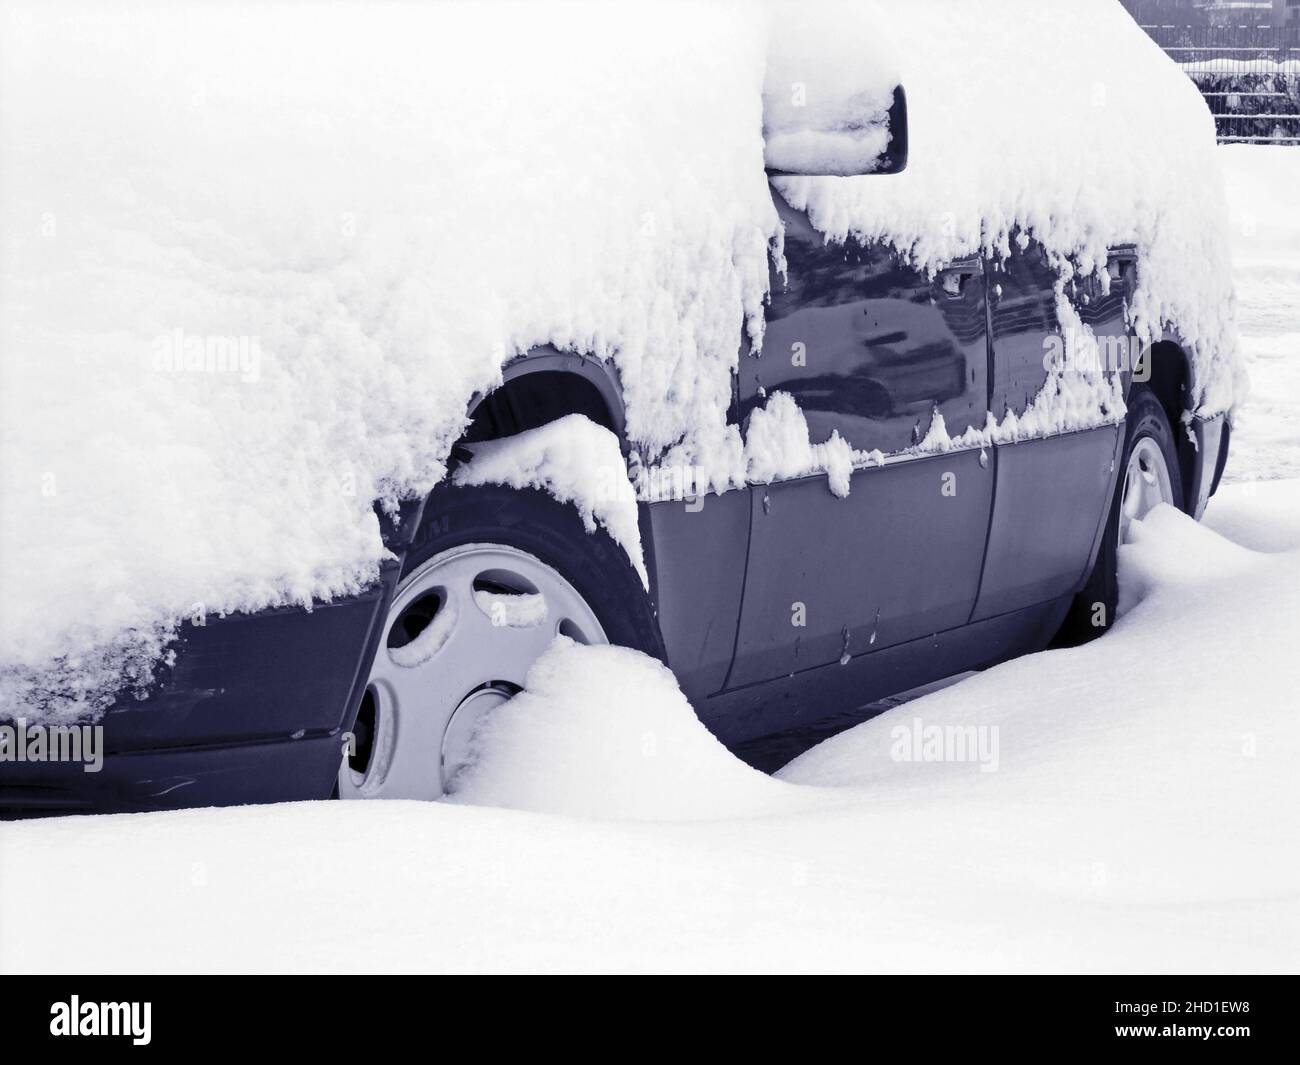 Ein Mercedes Benz Auto wird mit einem Besen aus Schnee und Eis, Deutschland  gereinigt Stockfotografie - Alamy